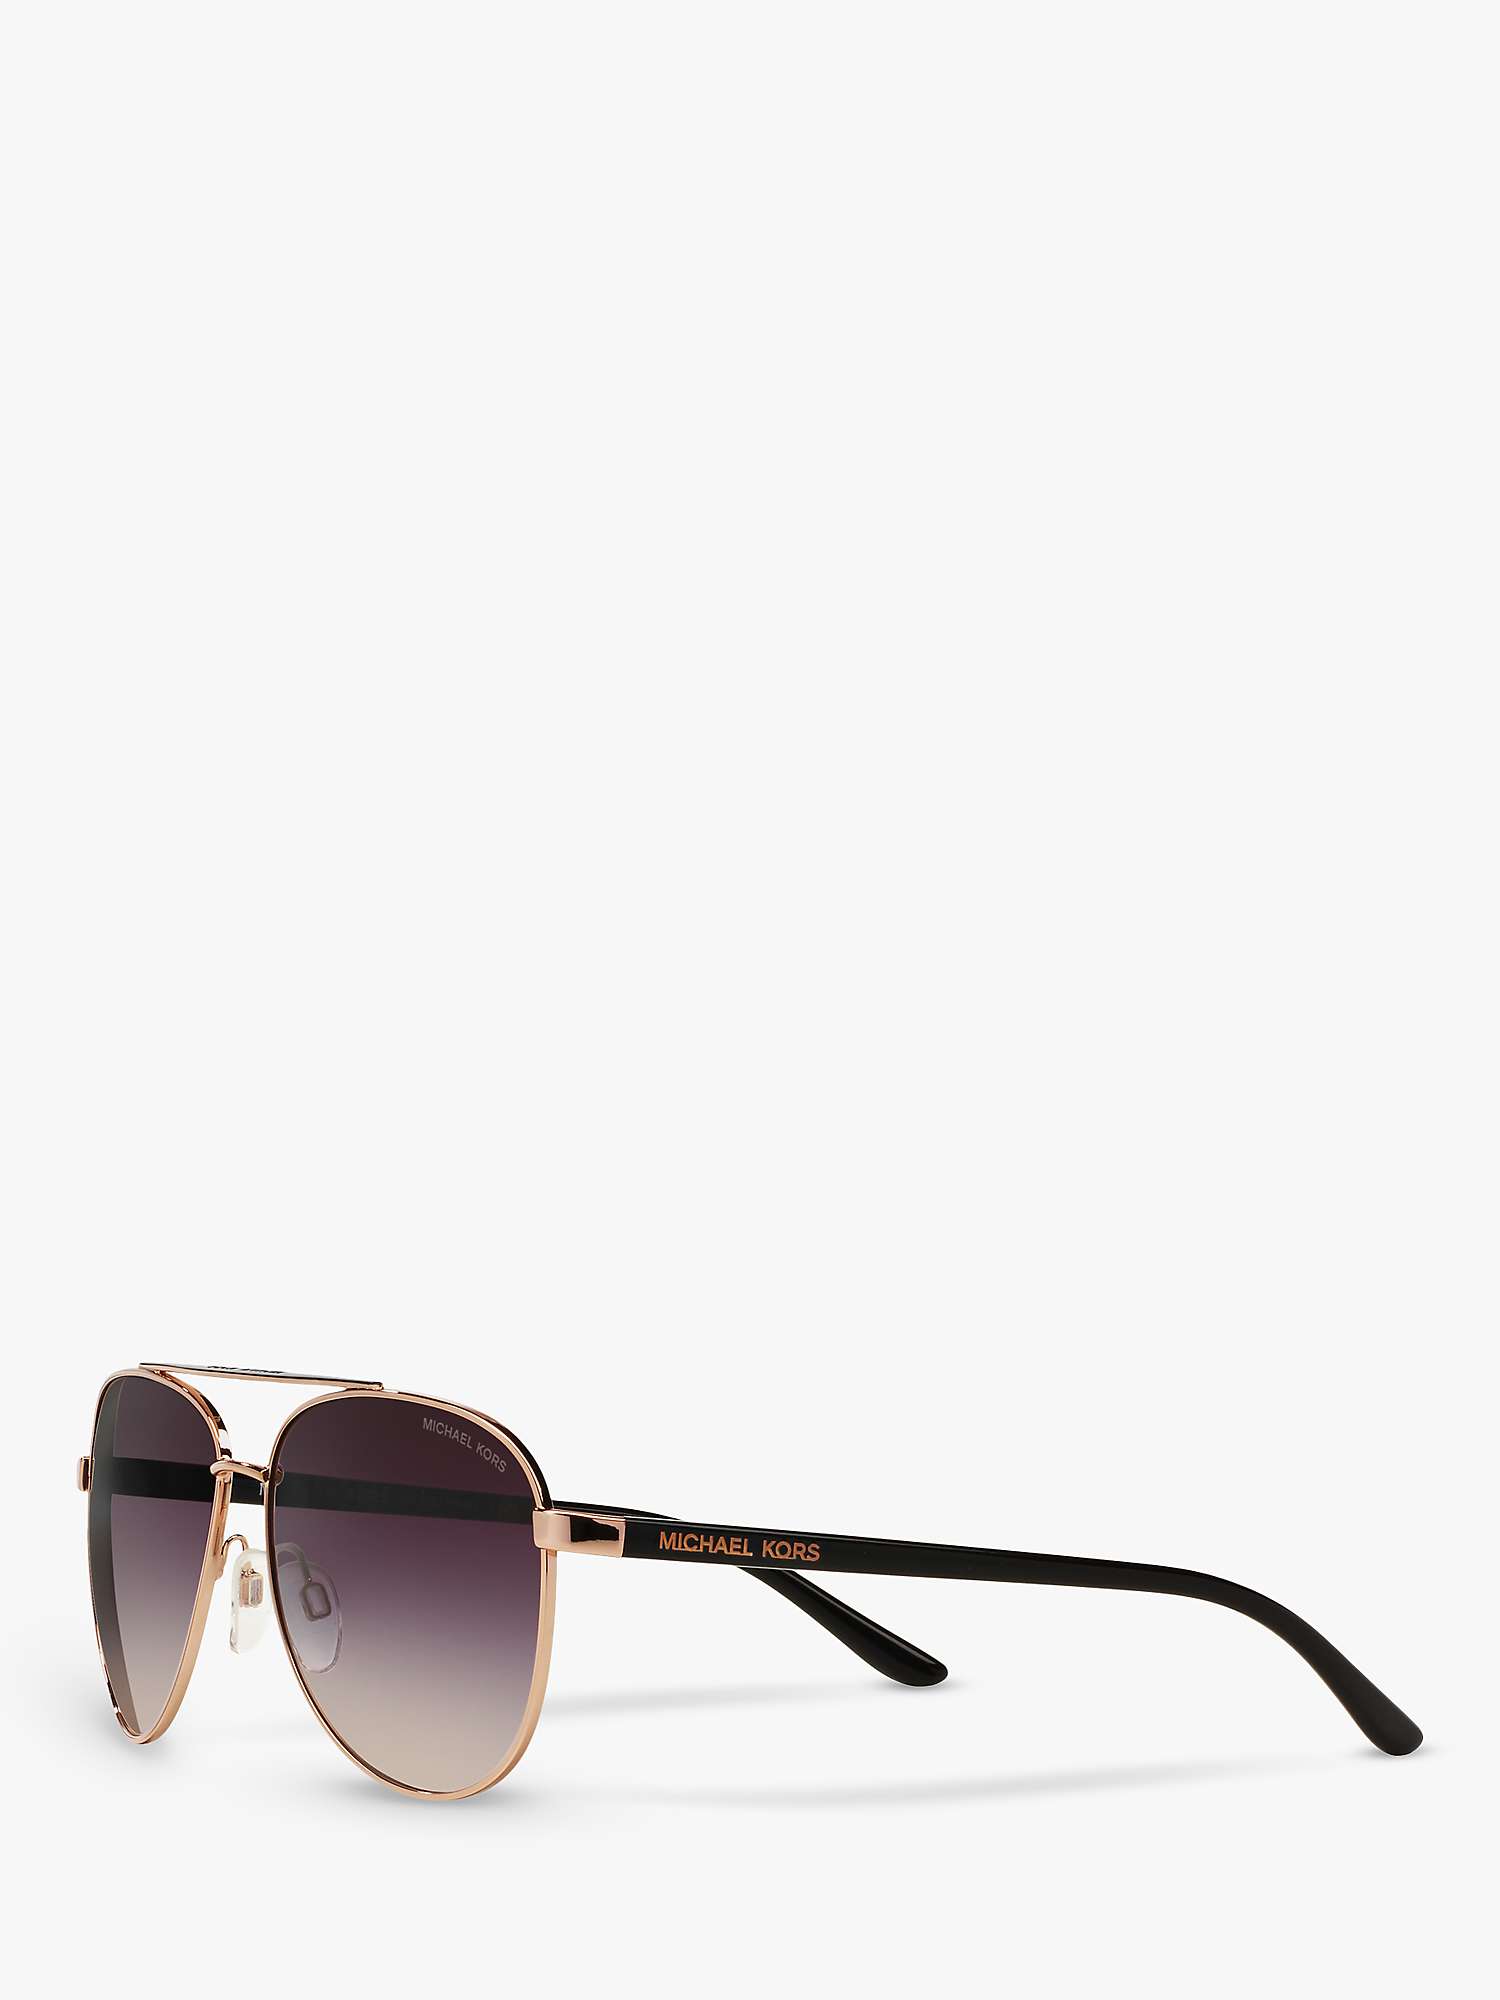 Buy Michael Kors MK5007 Hvar I Aviator Sunglasses Online at johnlewis.com